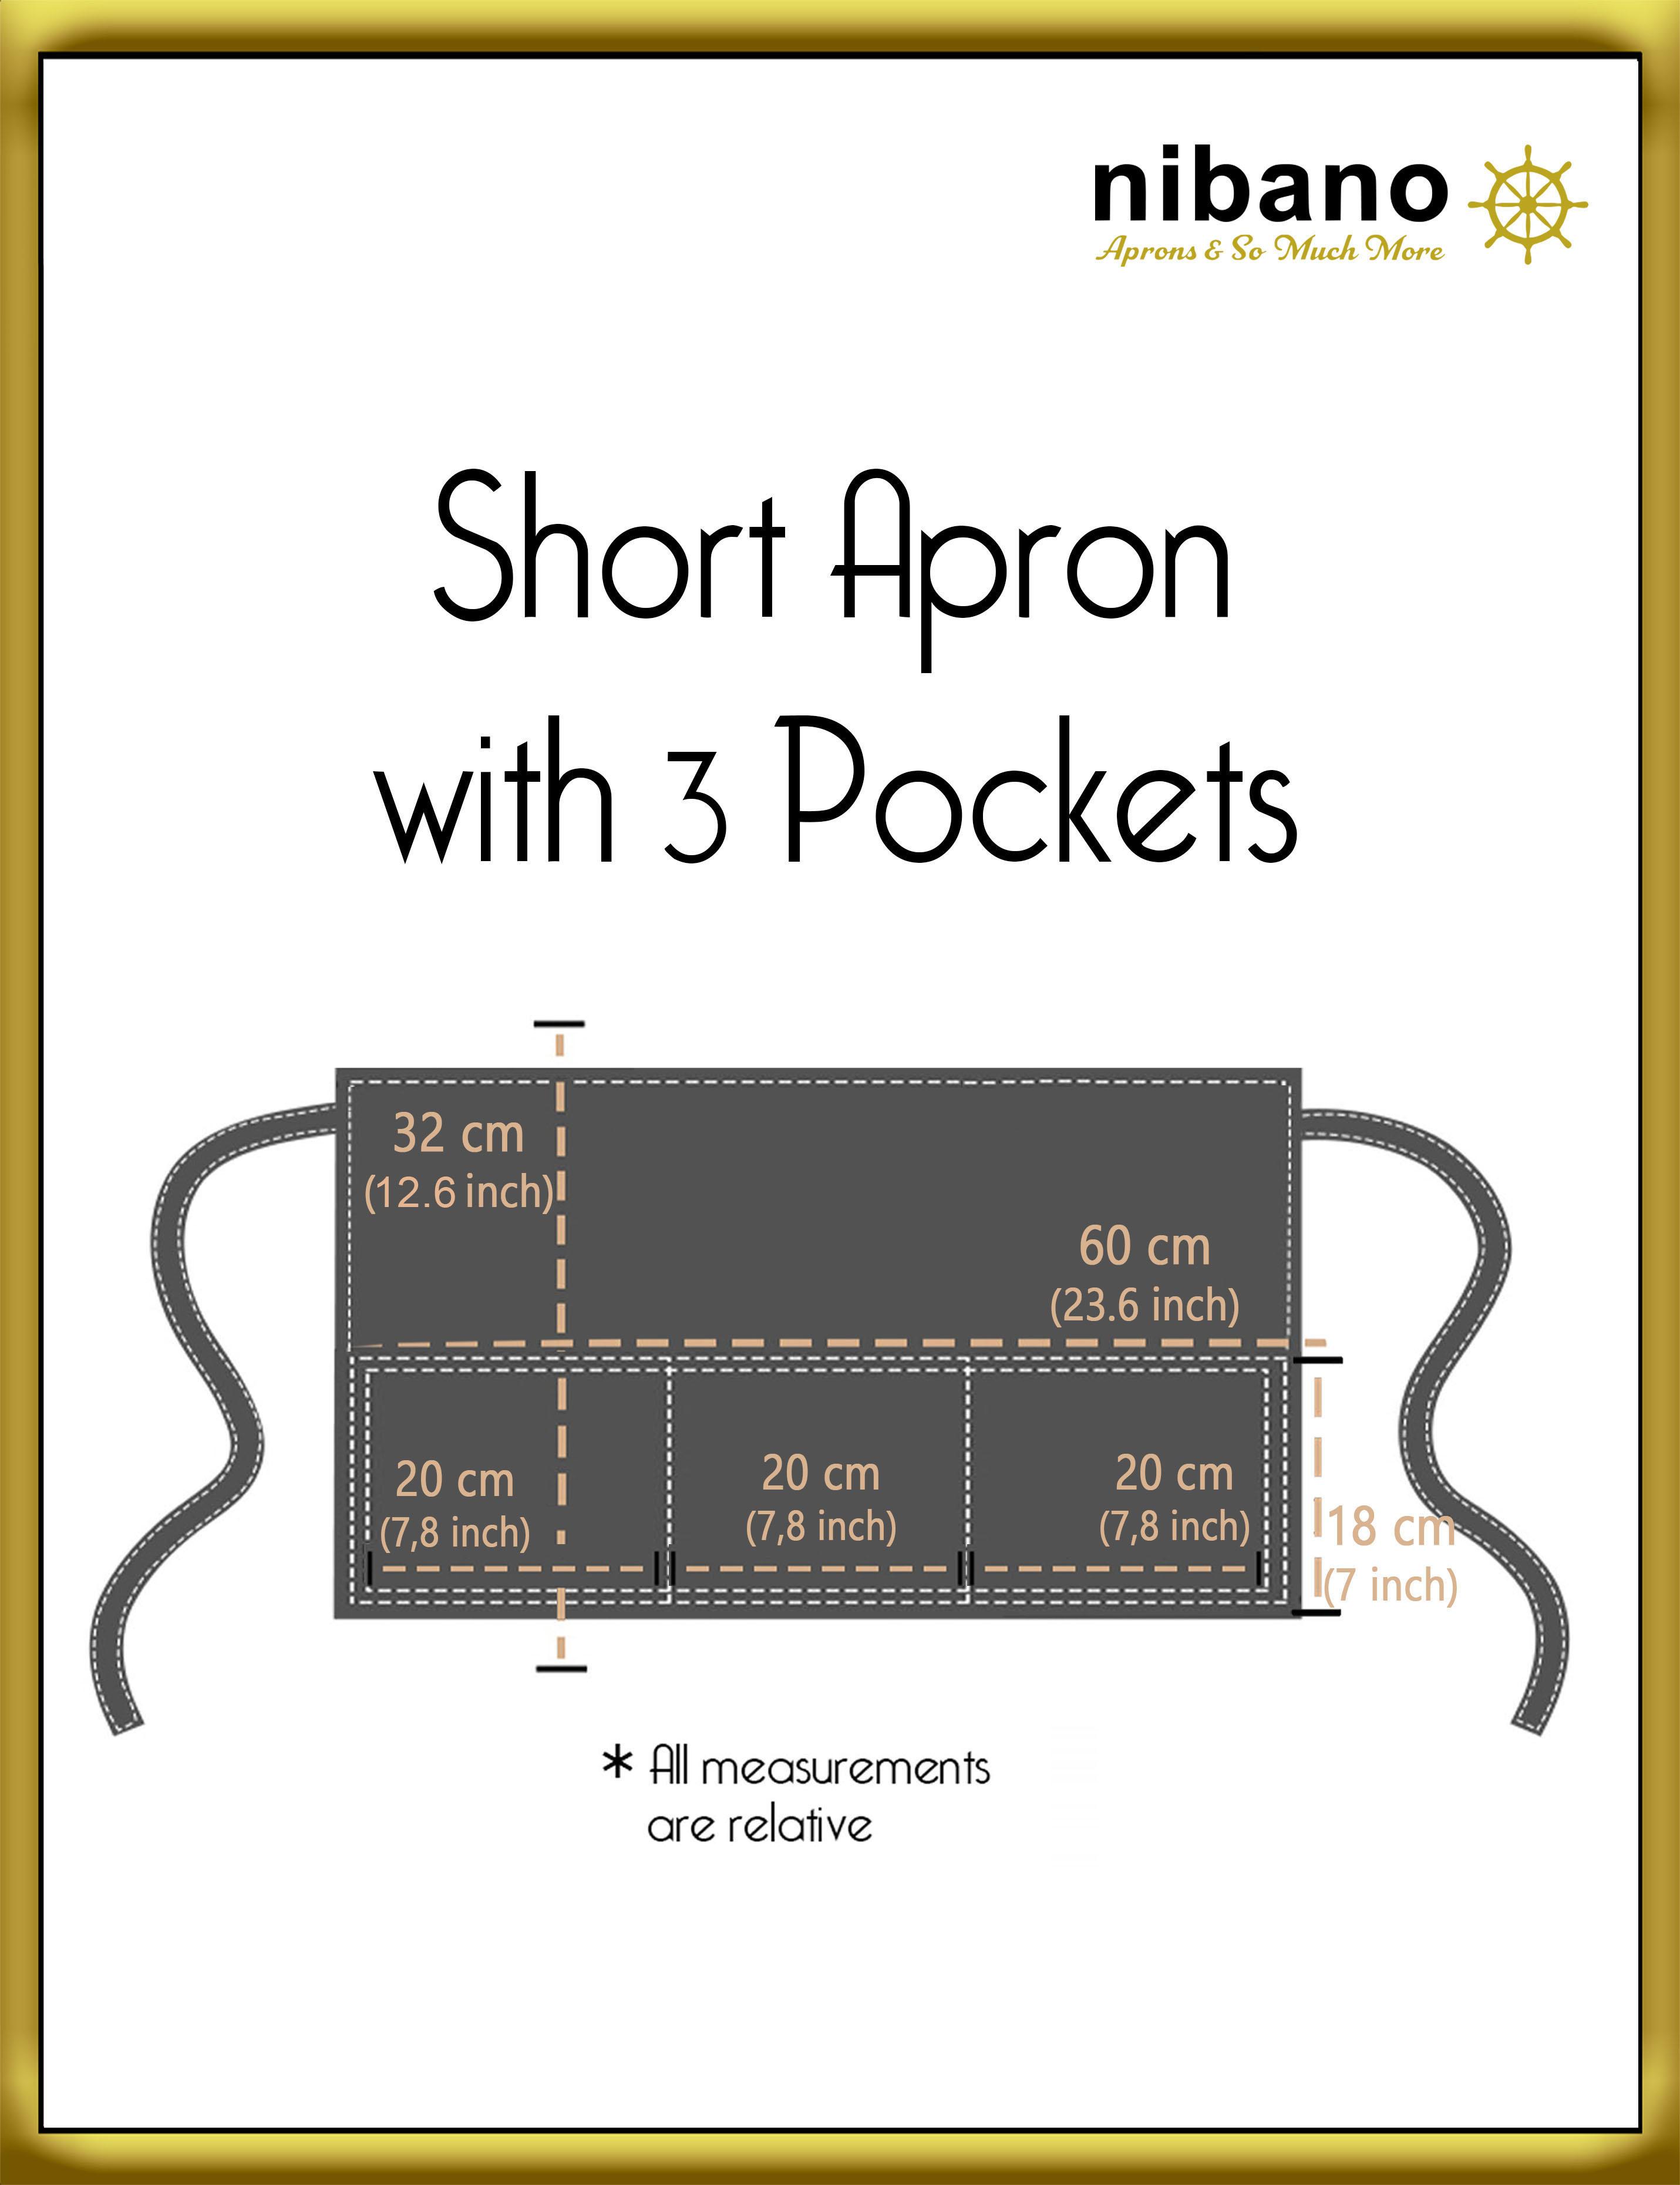 Personalised short bar aprons dimensions